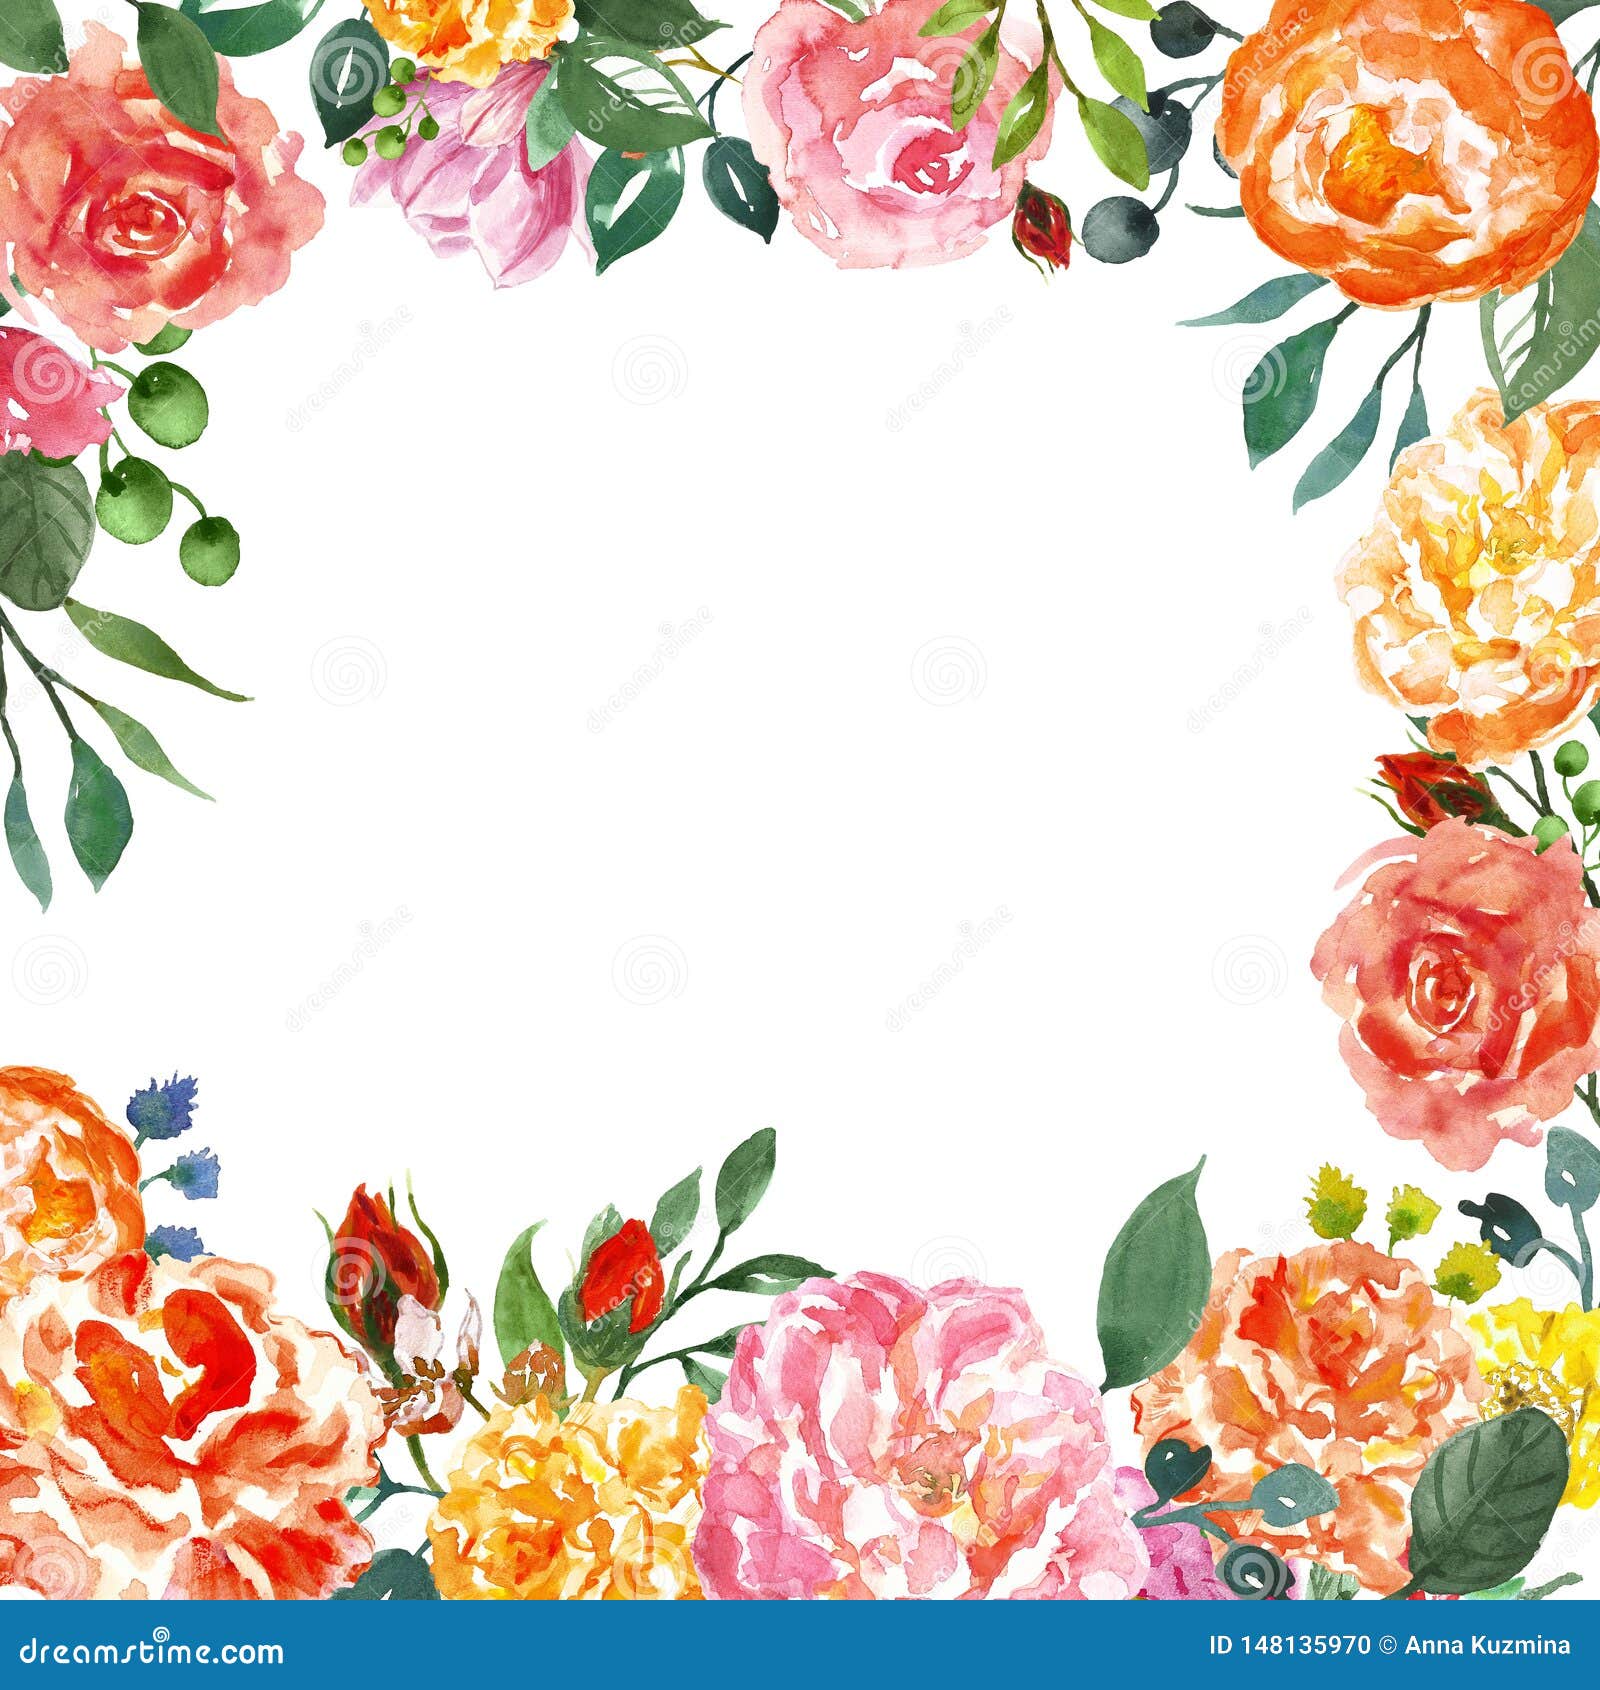 Sự kết hợp của hoa paeonia cam và hoa hồng hồng trên vòng hoa sẵn có này tạo nên một sản phẩm đẹp mắt và dịu dàng. Với màu sắc đầy tươi mới và sự tỉ mỉ trong cách sắp xếp hoa, vòng hoa này là một điểm nhấn tuyệt vời cho mọi khung cảnh. Hãy để bản thân bạn được chìm đắm vào vẻ đẹp tự nhiên của những bông hoa này.